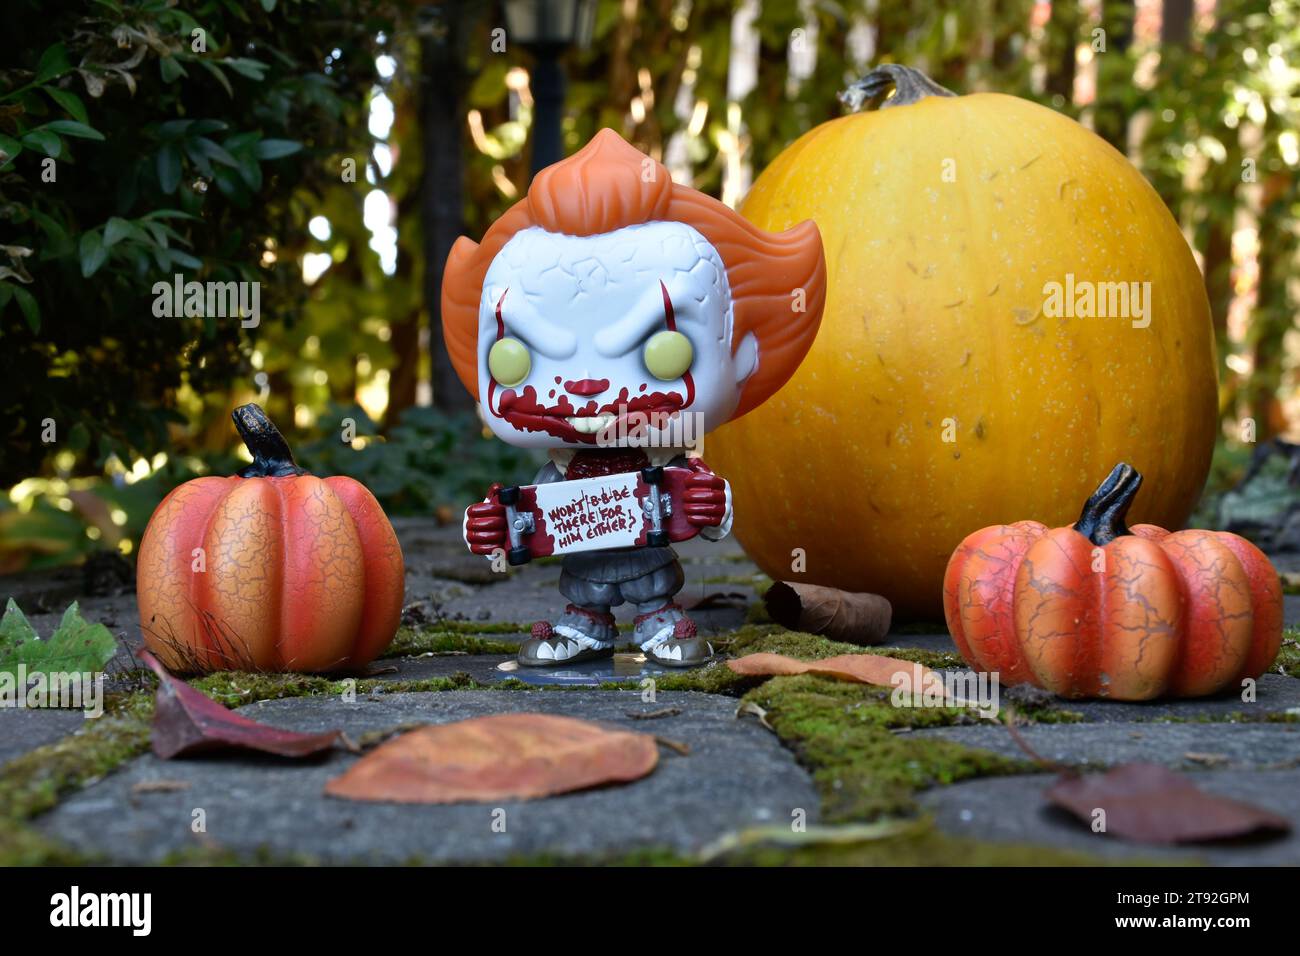 Funko Pop figurine d'action de Pennywise mal clown avec planche à roulettes sanglante du film d'horreur IT. Halloween, saison effrayante, citrouilles, mousse, feuilles d'automne. Banque D'Images